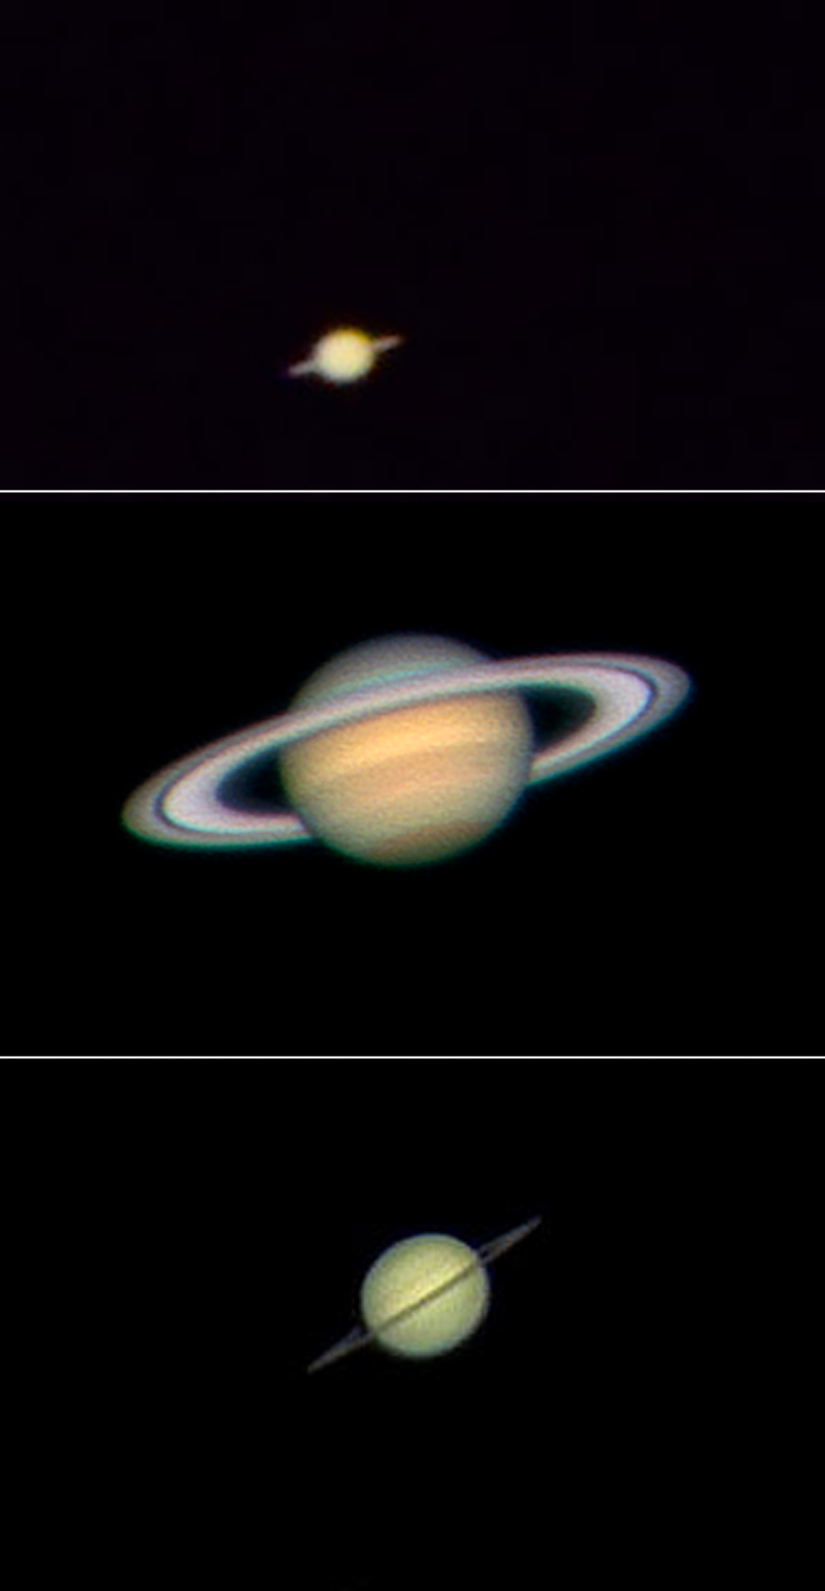 130 milimetrelik apertüre sahip Celestron NexStar 130SLT Bilgisayarlı Teleskop ile Satürn (en üstte). 14 inçlik (355 milimetrelik) apertüre sahip bir teleskop ile Satürn (ortada). 8 inç (200 milimetrelik) apertüre sahip bir teleskop ile Satürn (altta).